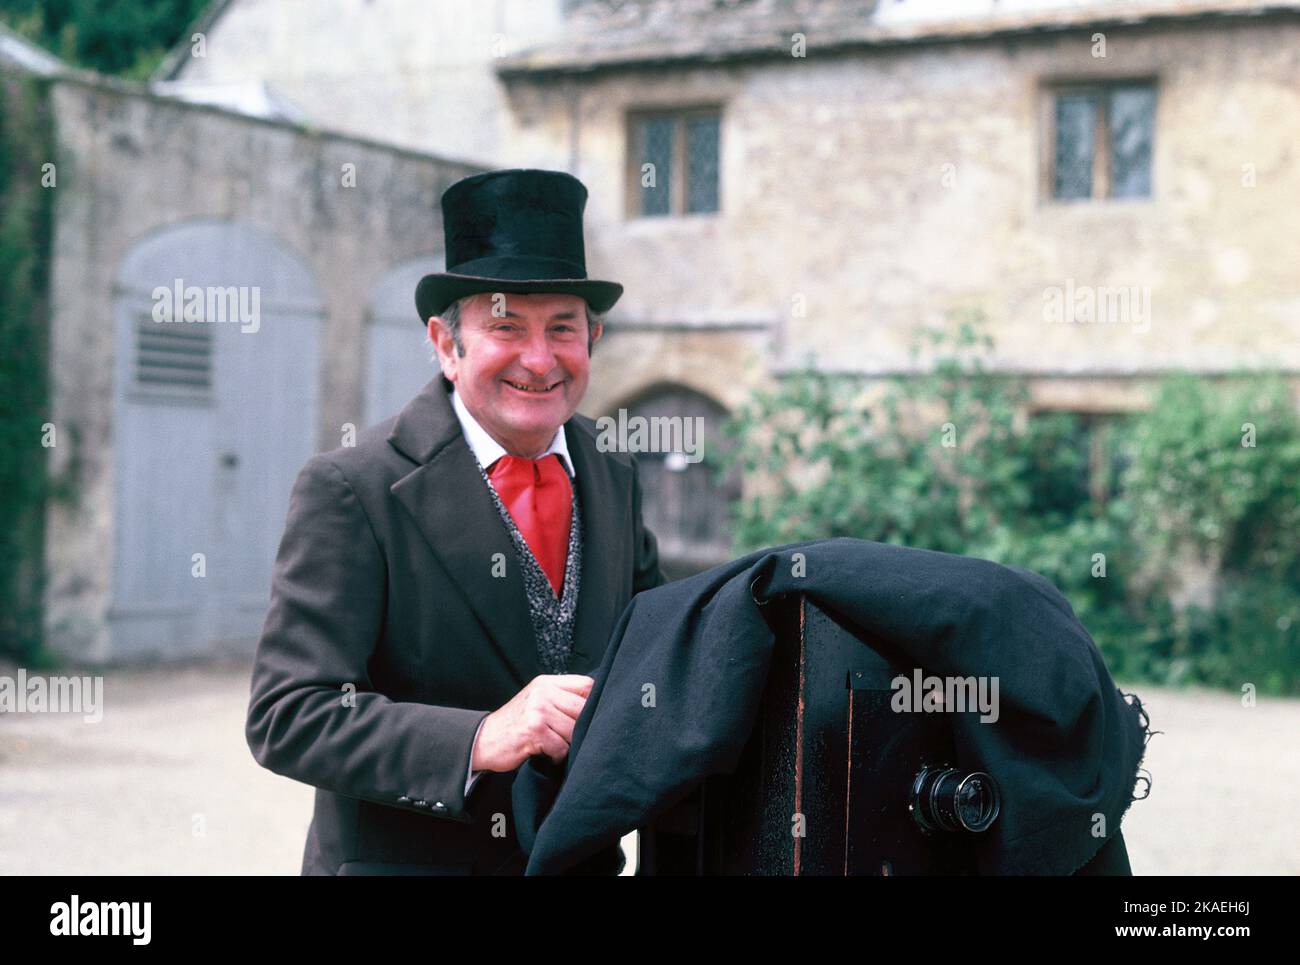 Regno Unito. Inghilterra. Wiltshire. Fox Talbot celebrazioni presso Lacock Abbey. Uomo vestito come fotografo, Fox Talbot. Foto Stock